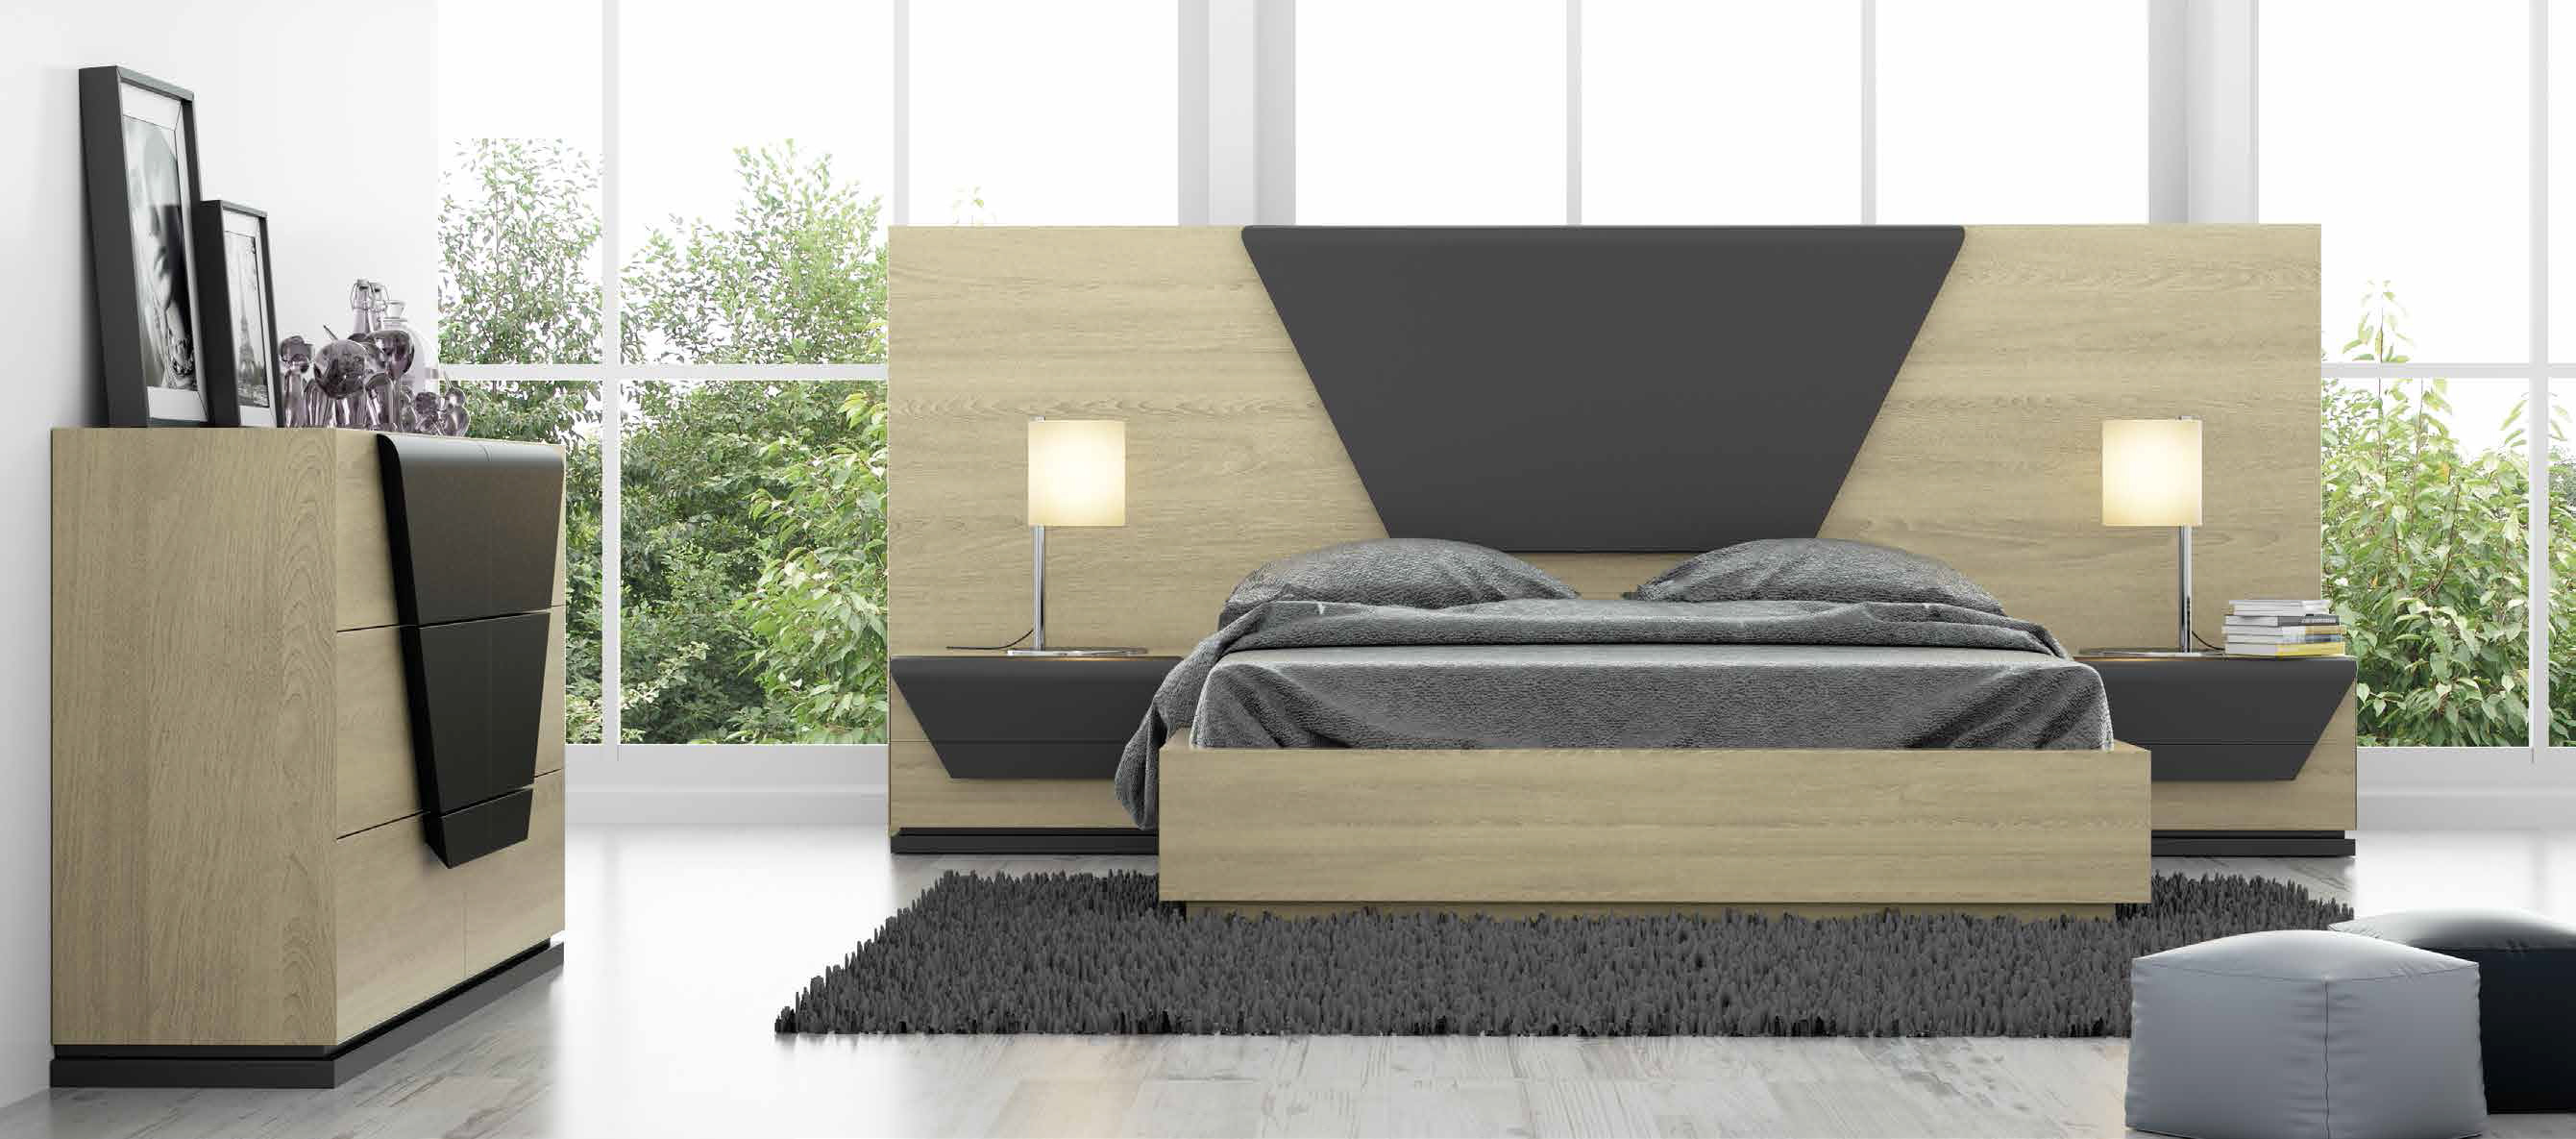 Brands Franco Furniture Avanty Bedrooms, Spain DOR 85